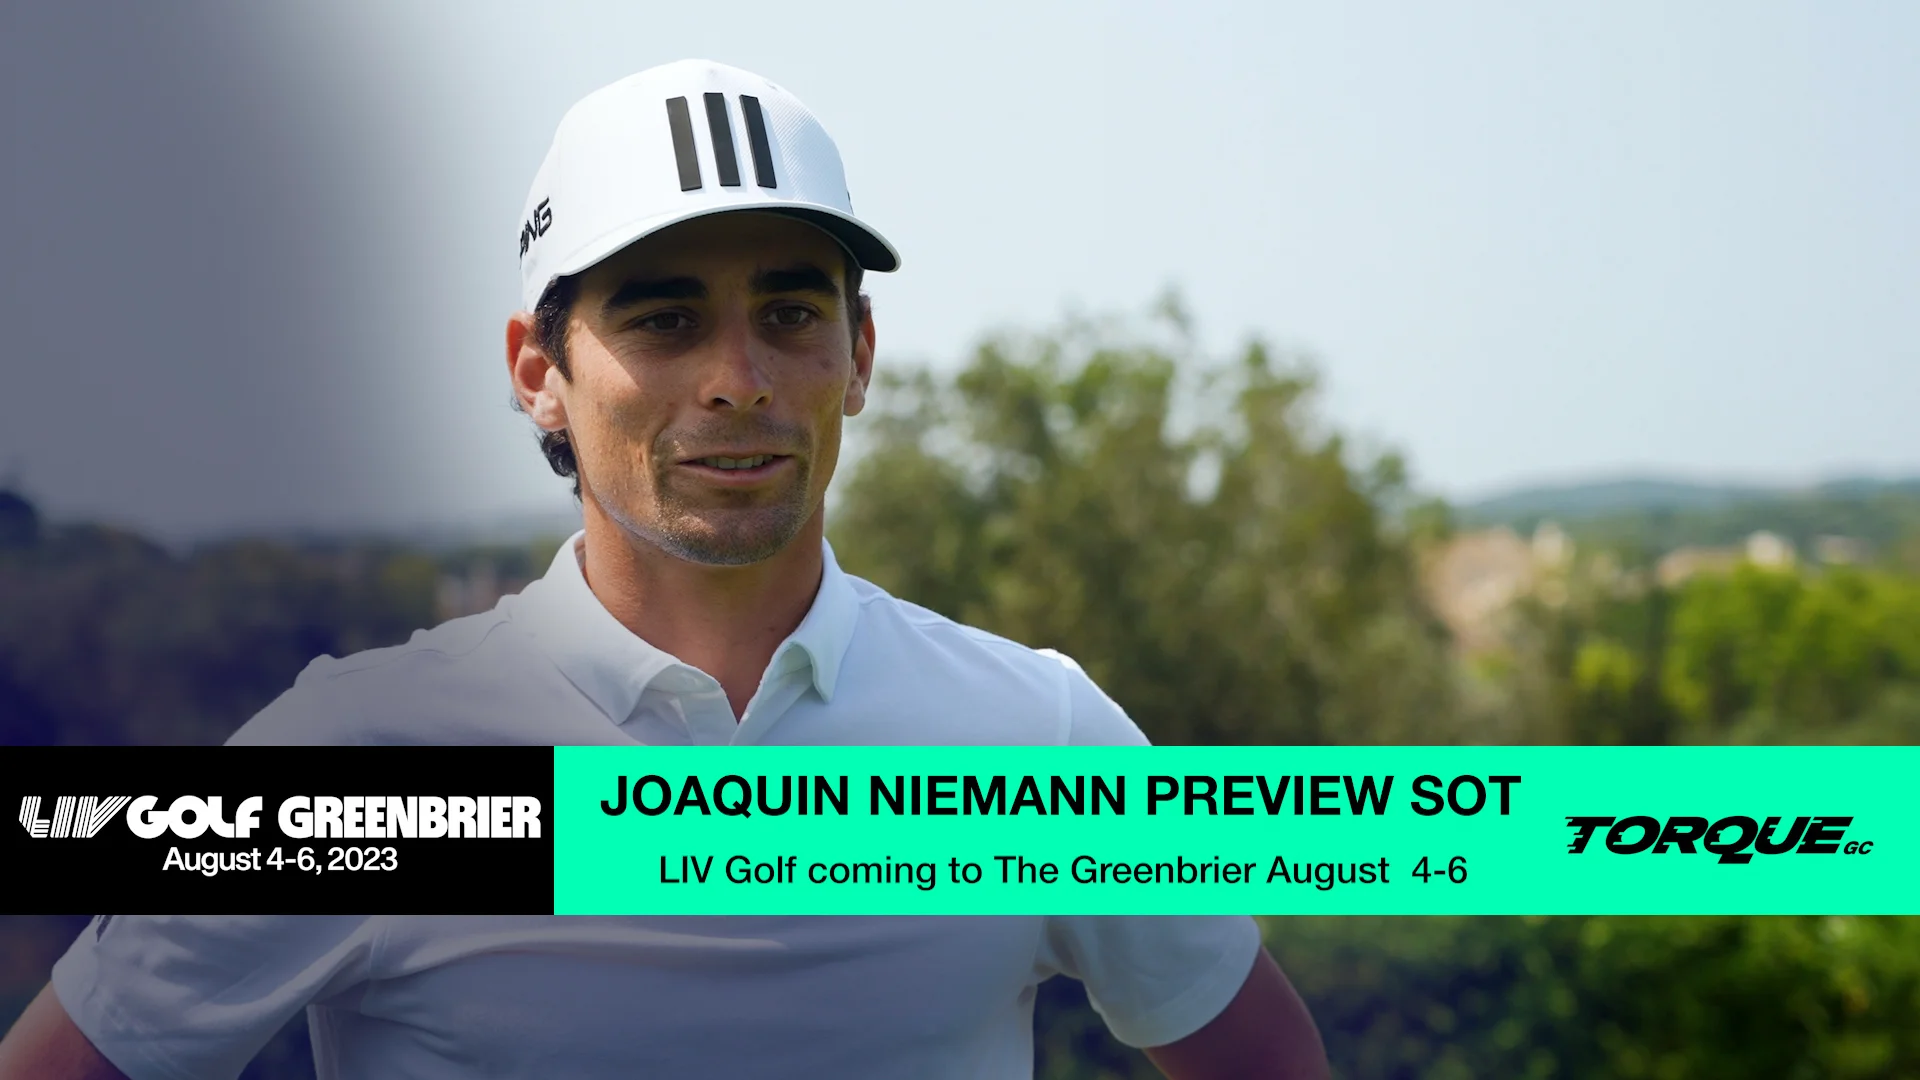 How Much Did LIV Golf Pay Joaquin Niemann?